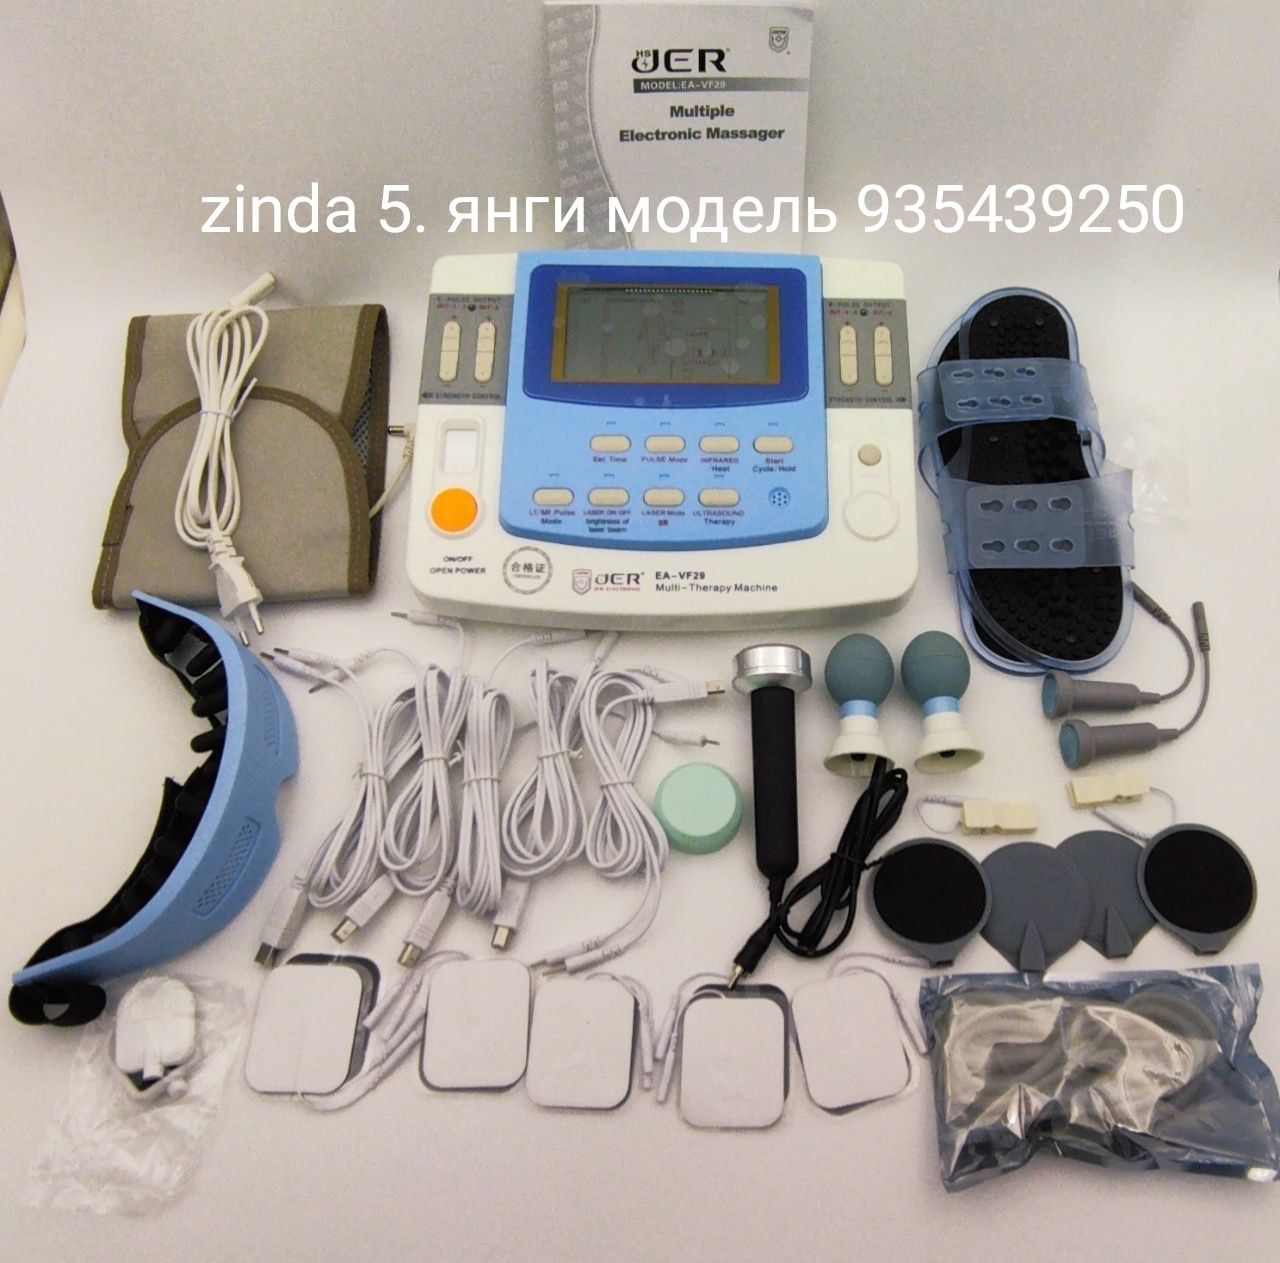 Зинда 5 новый поколения много функциональн  лечебные аппарат гарантия